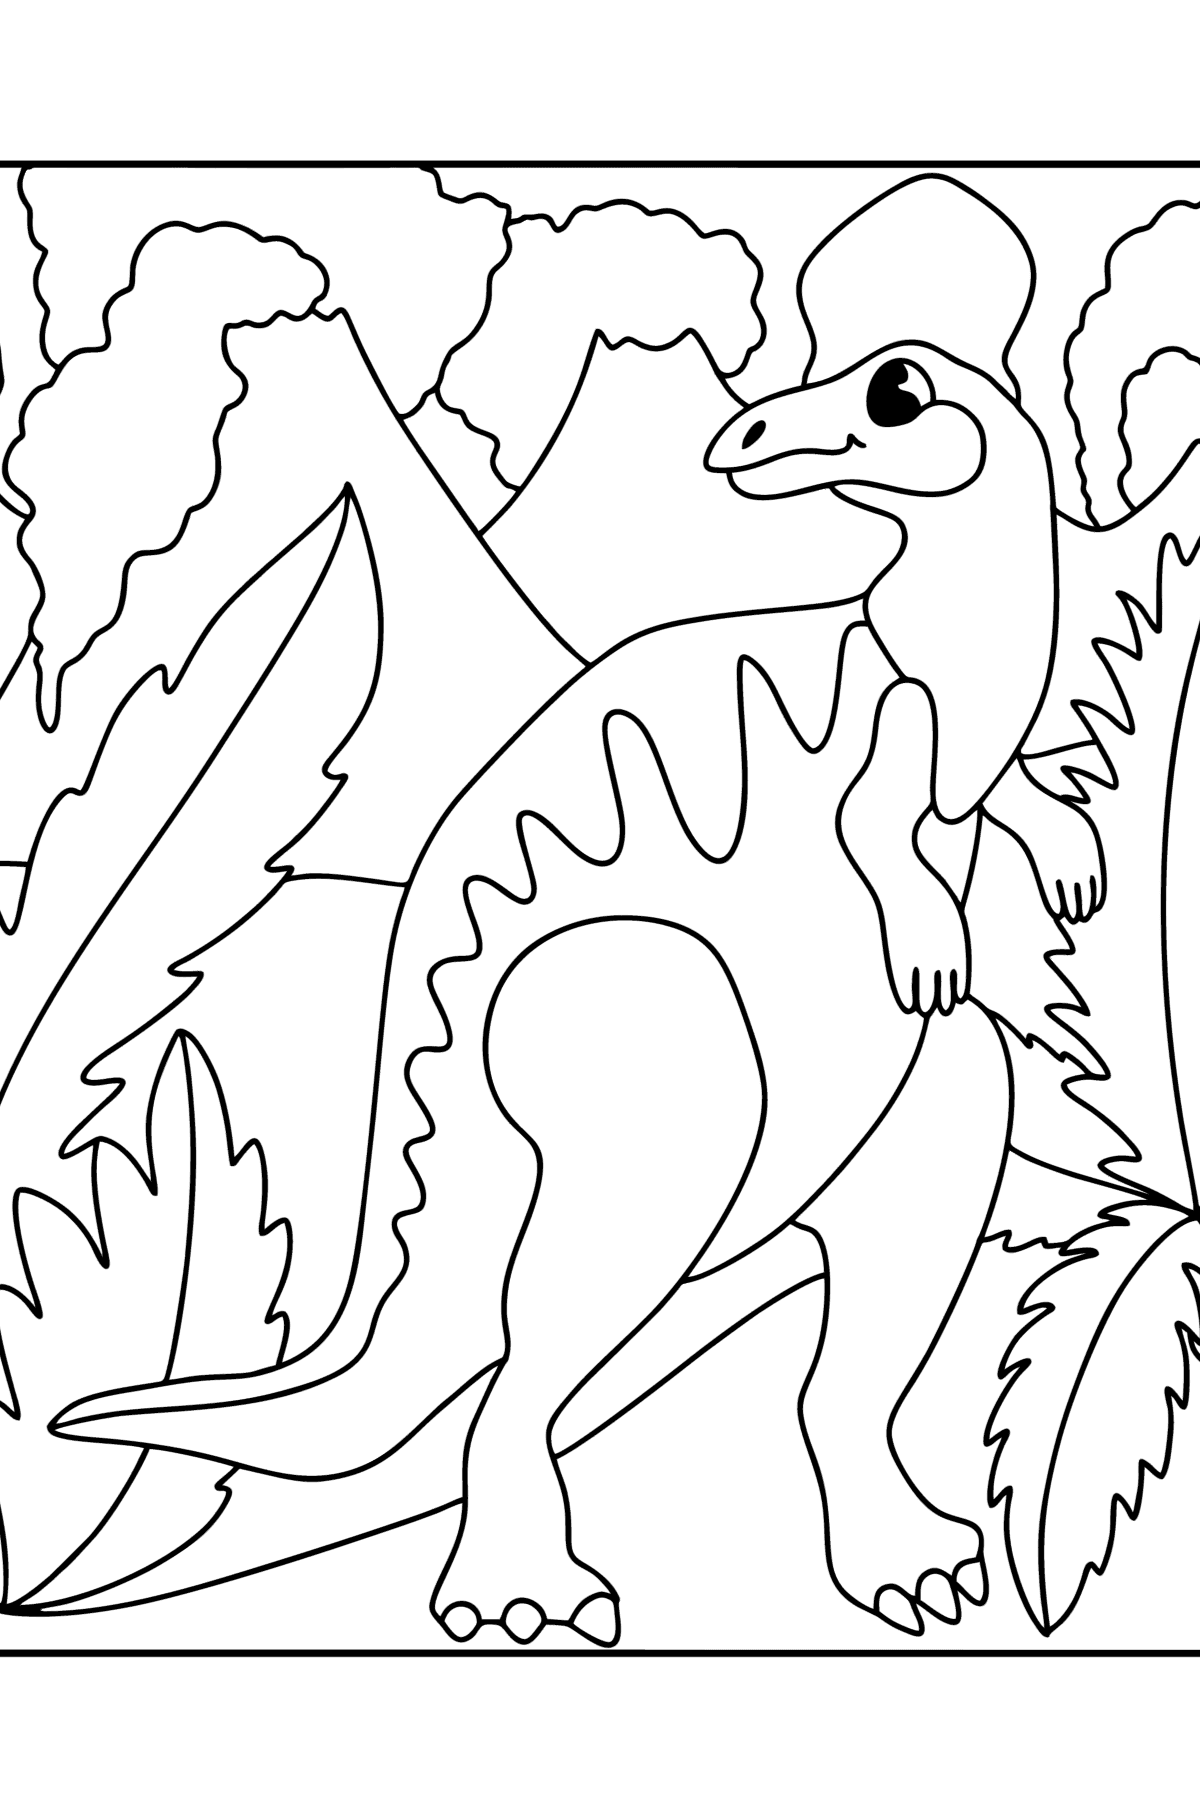 Tegning til fargelegging hadrosaur - Tegninger til fargelegging for barn